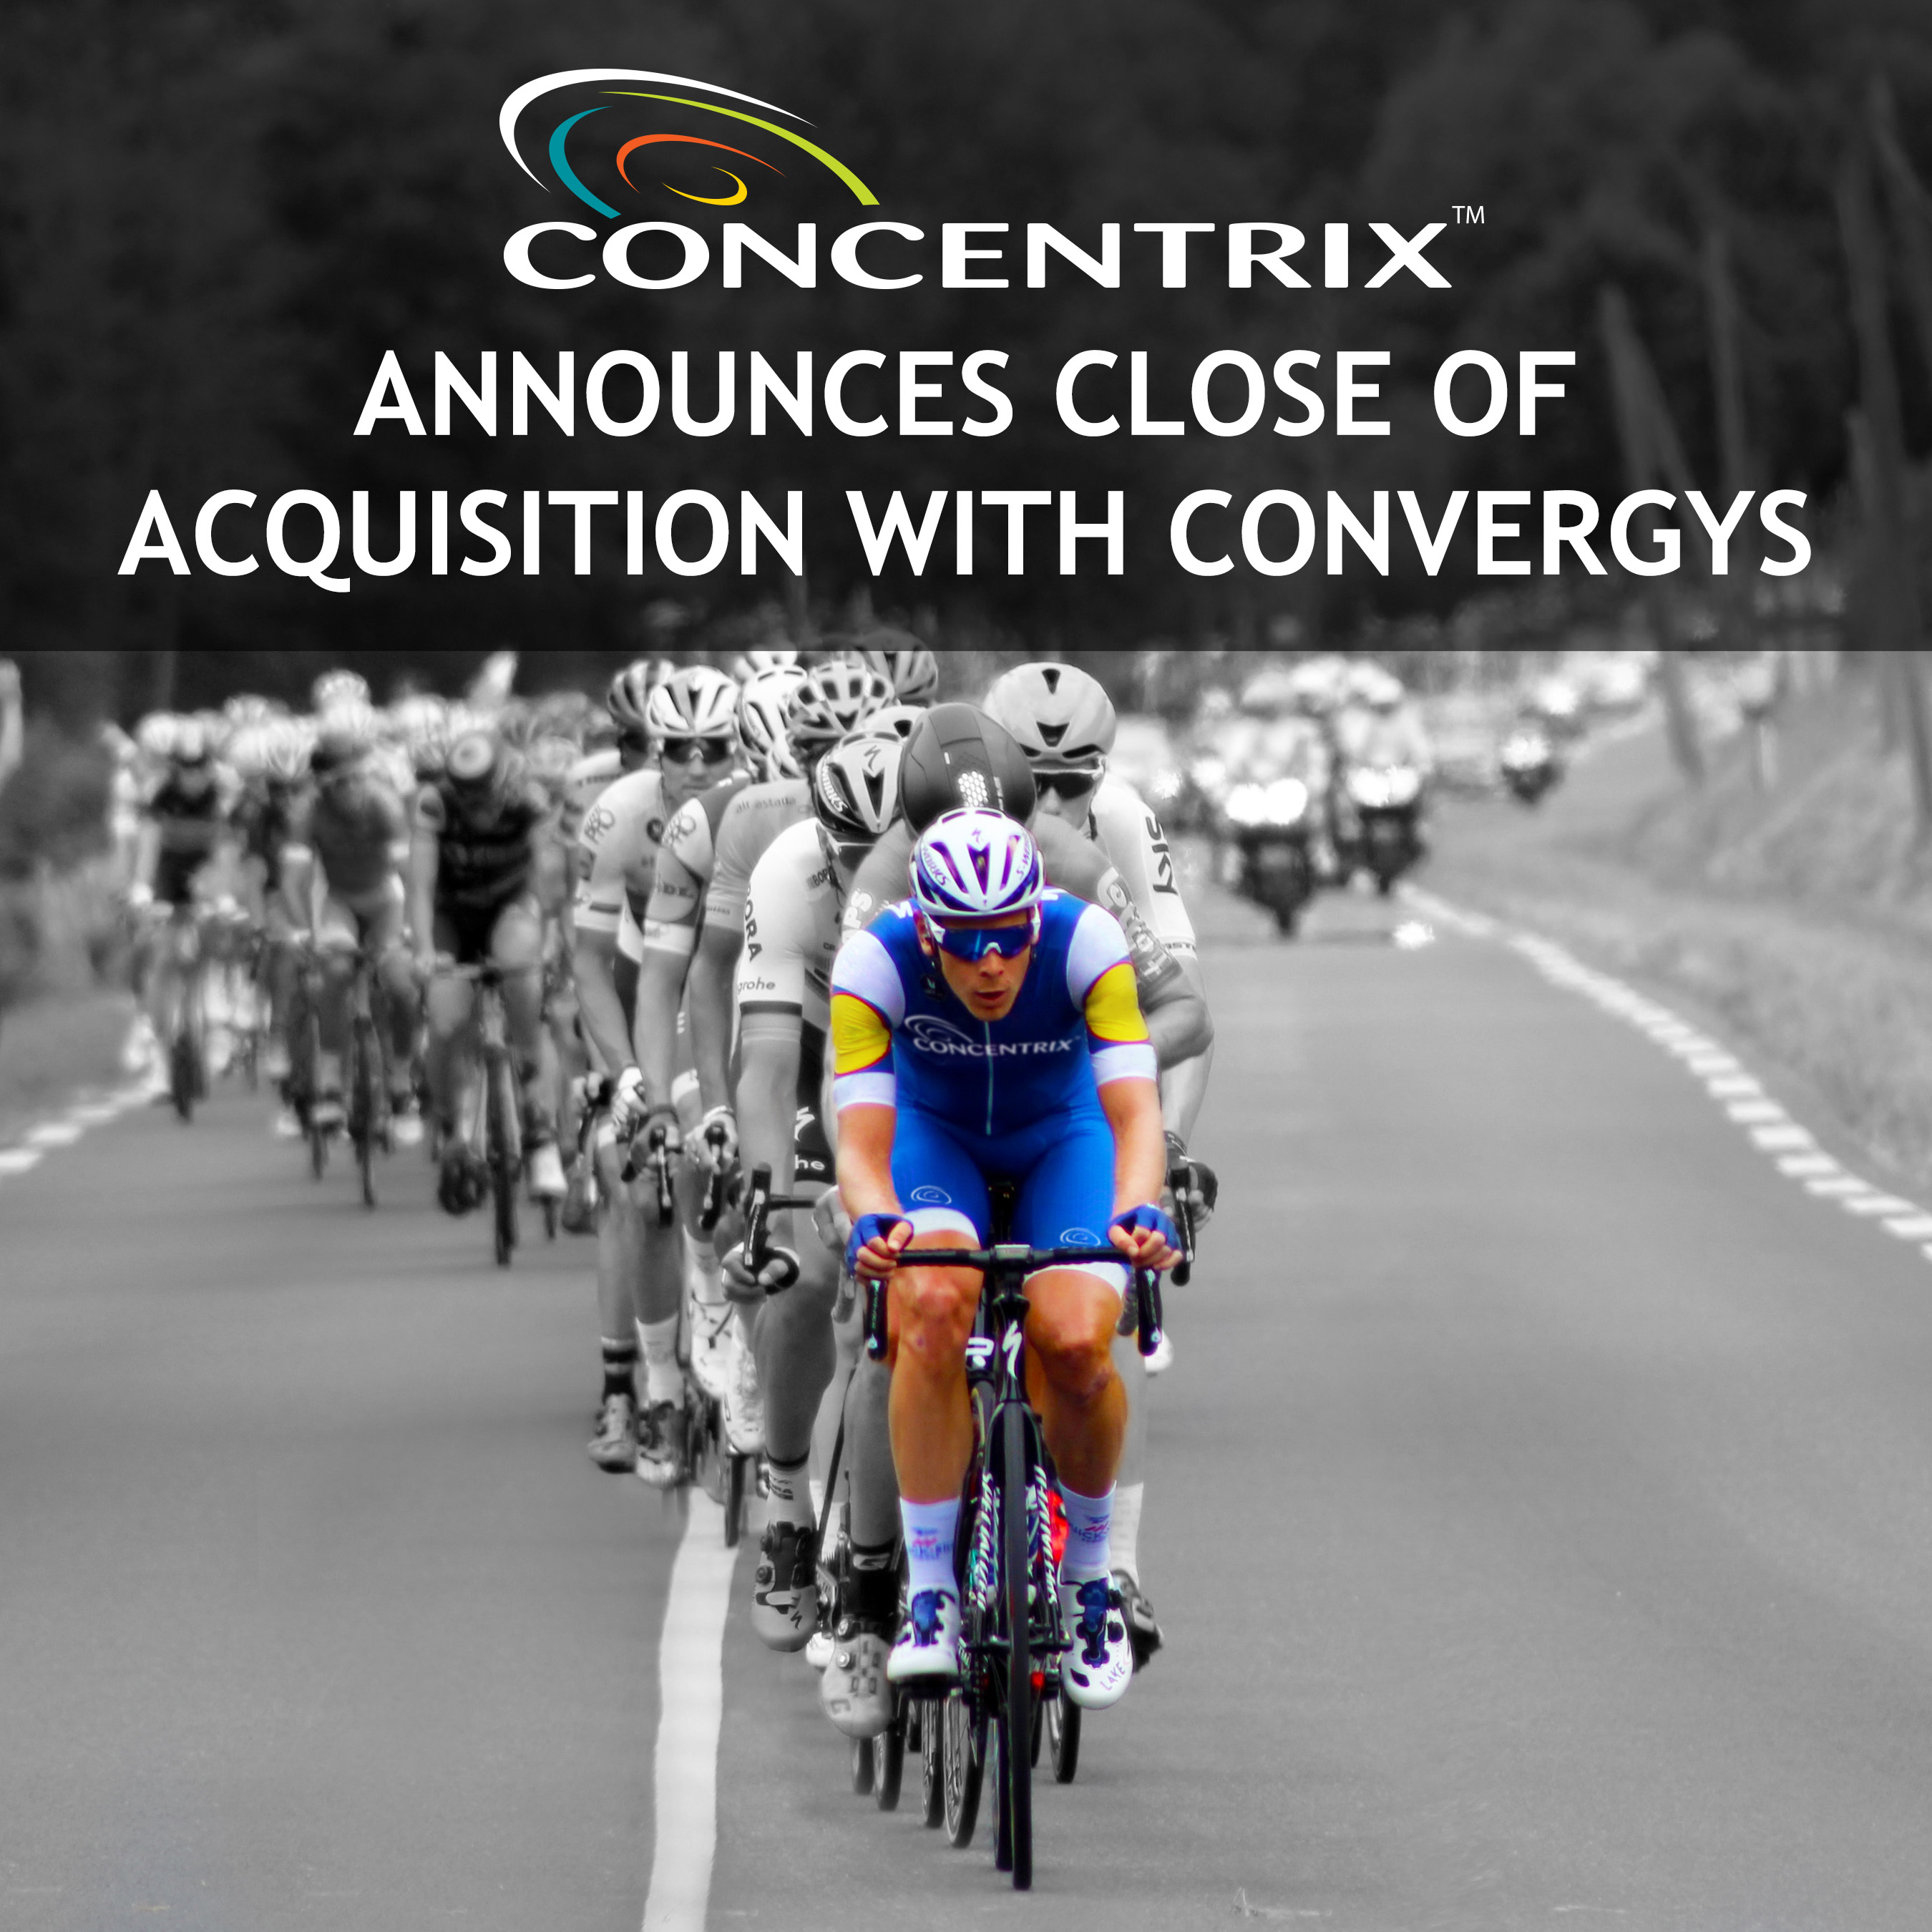 Concentrix Announces Close of Acquisition With Convergys